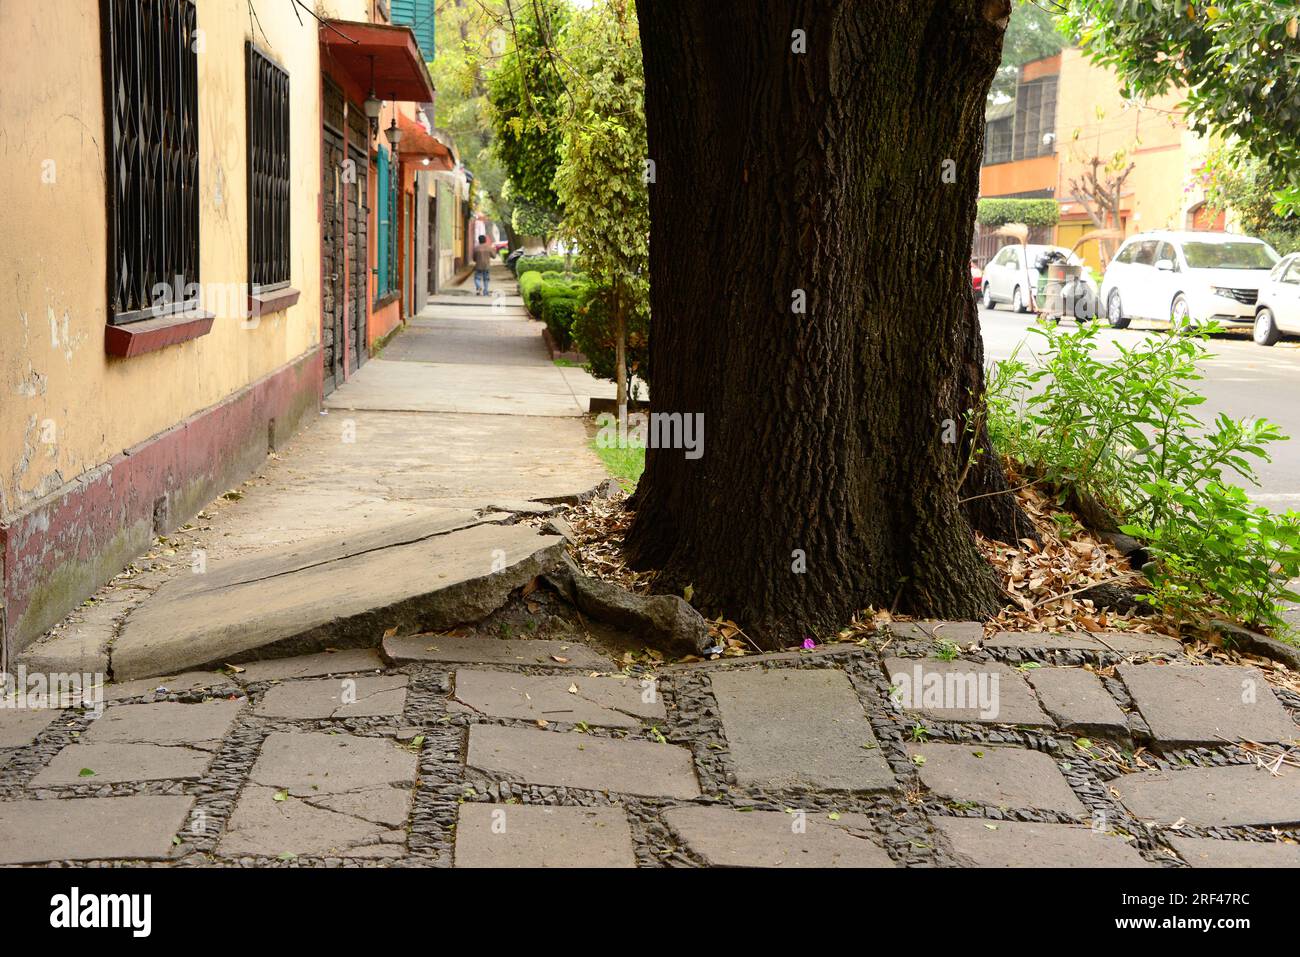 Altération biologique ; l'arbre à racines brise le trottoir. Mexique D. F. Banque D'Images